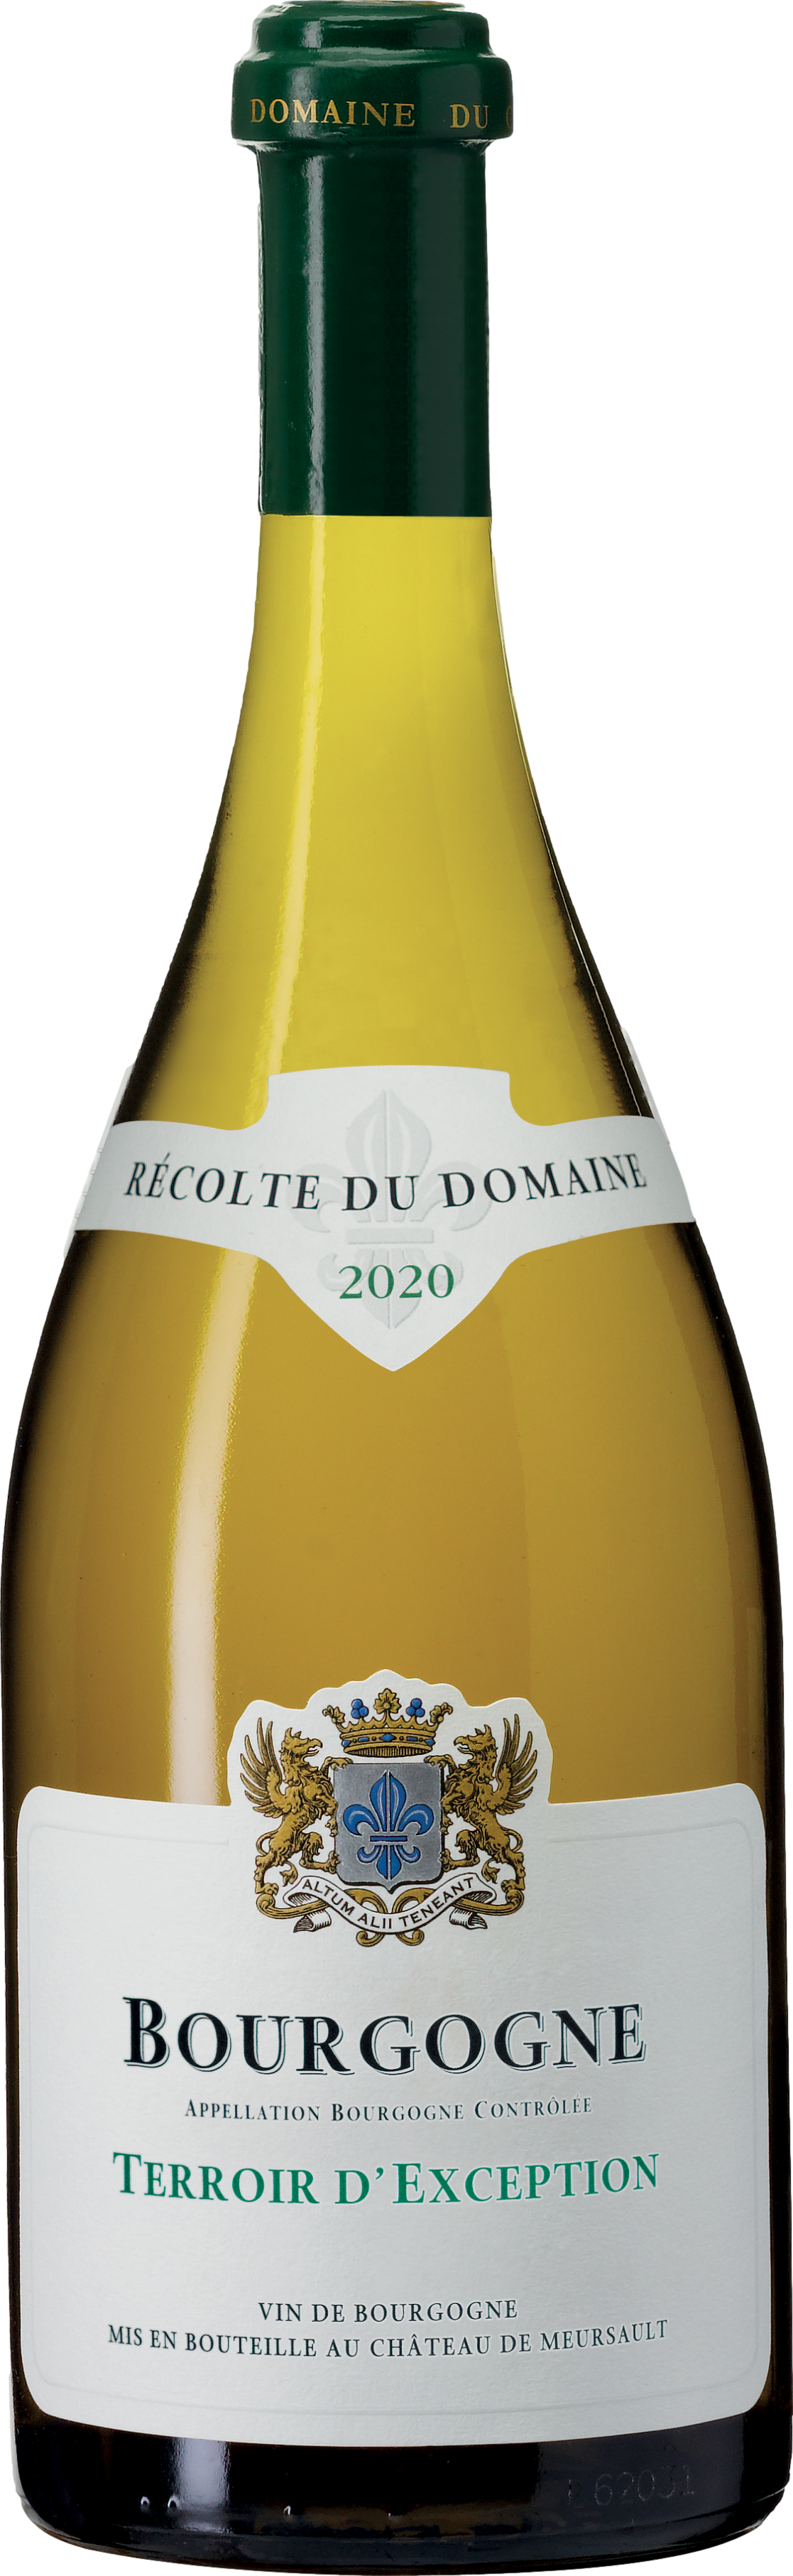 2019/2020 günstig Kaufen-Chateau de Meursault Bourgogne Terroir d'Exception Chardonnay 2020. Chateau de Meursault Bourgogne Terroir d'Exception Chardonnay 2020 . 